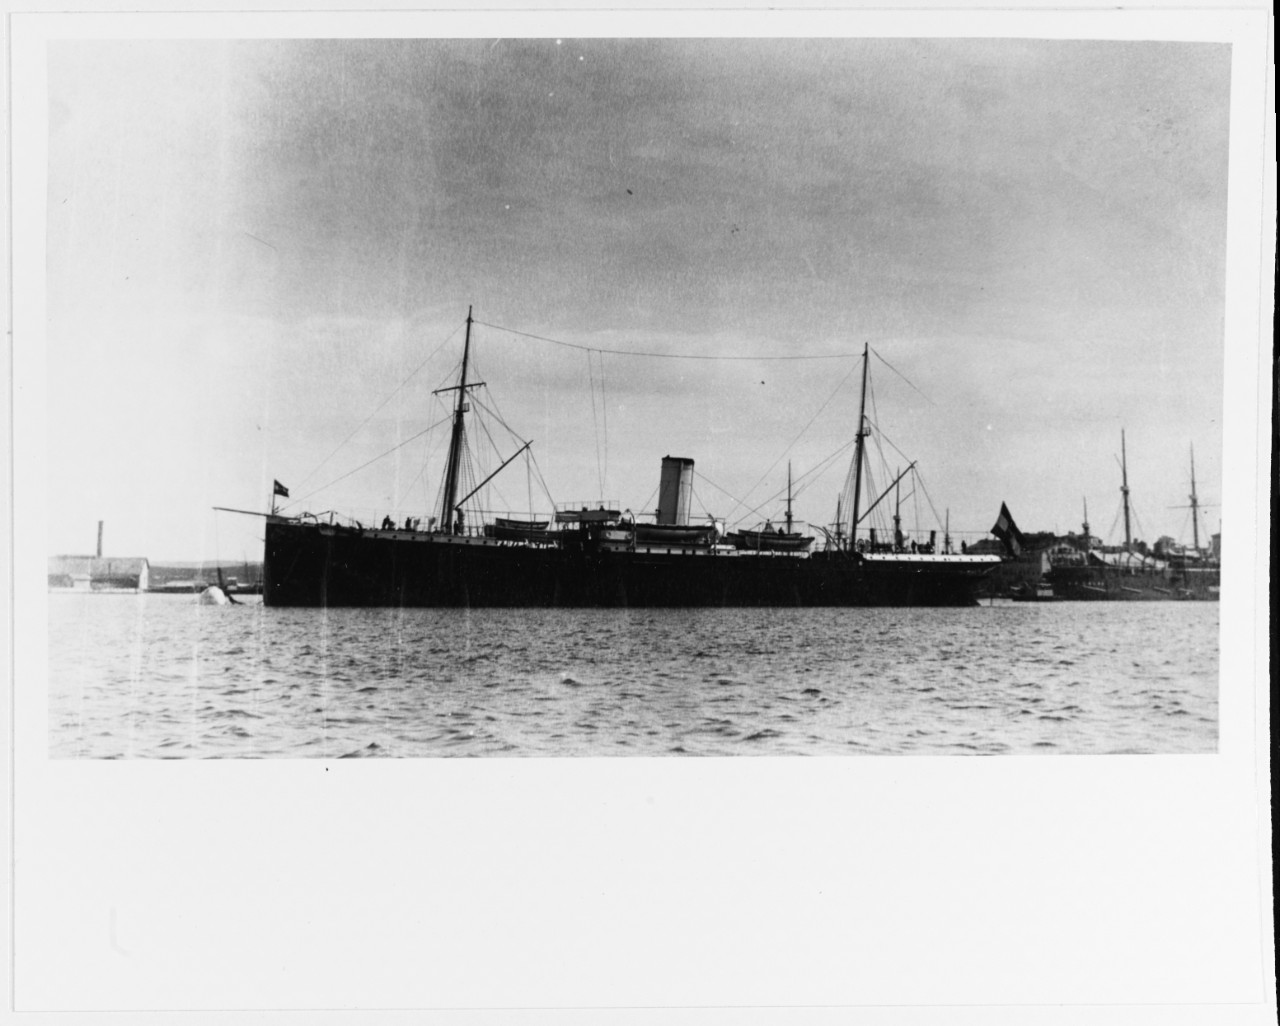 PELIKAN (Austrian depot ship, 1891-1920)